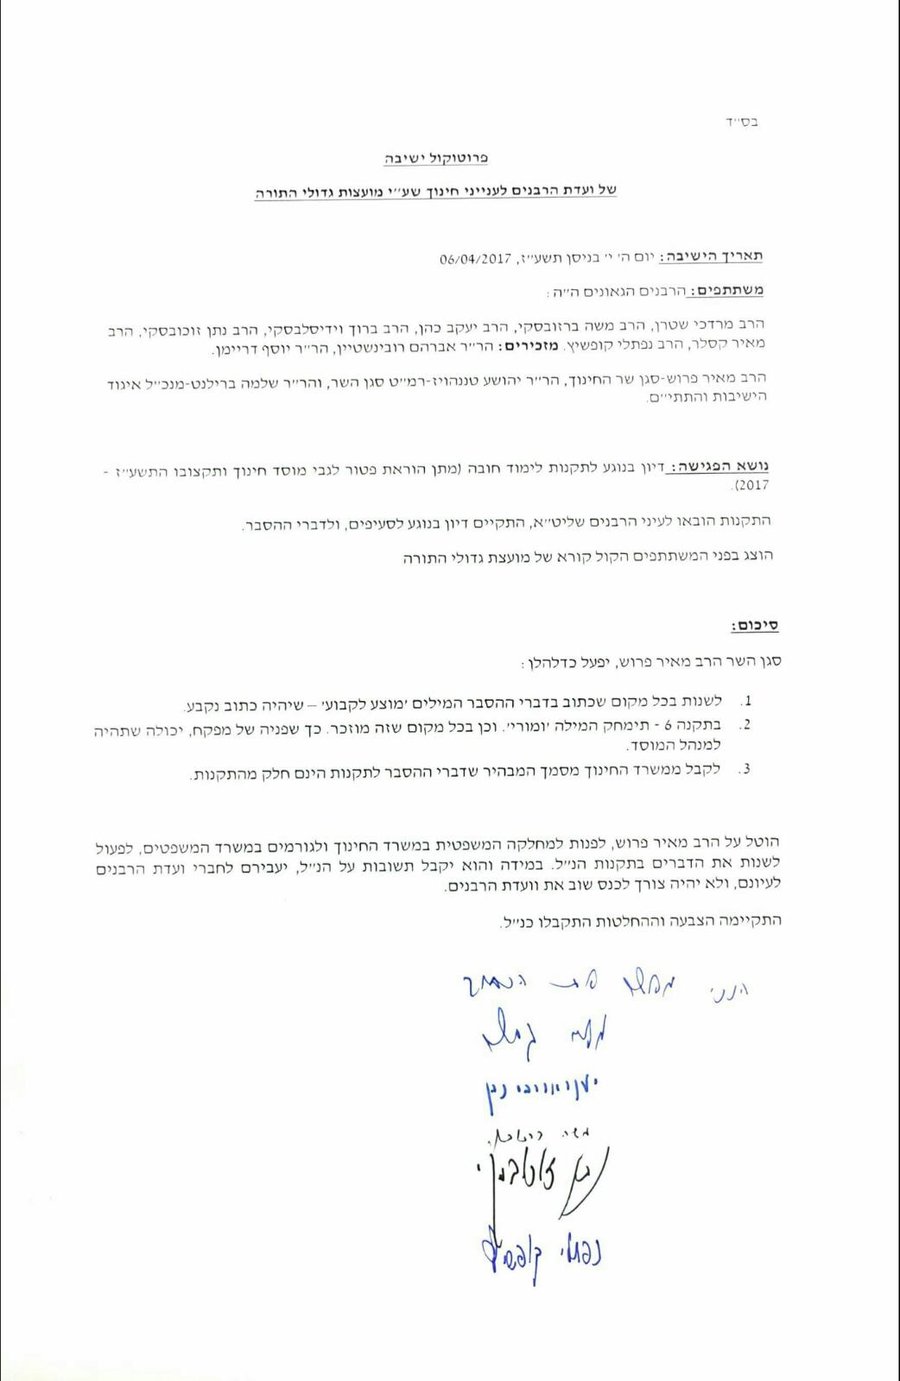 פרוטוקול ישיבת ועדת הרבנים של יהדות התורה שגיבתה את צעדיו של פרוש